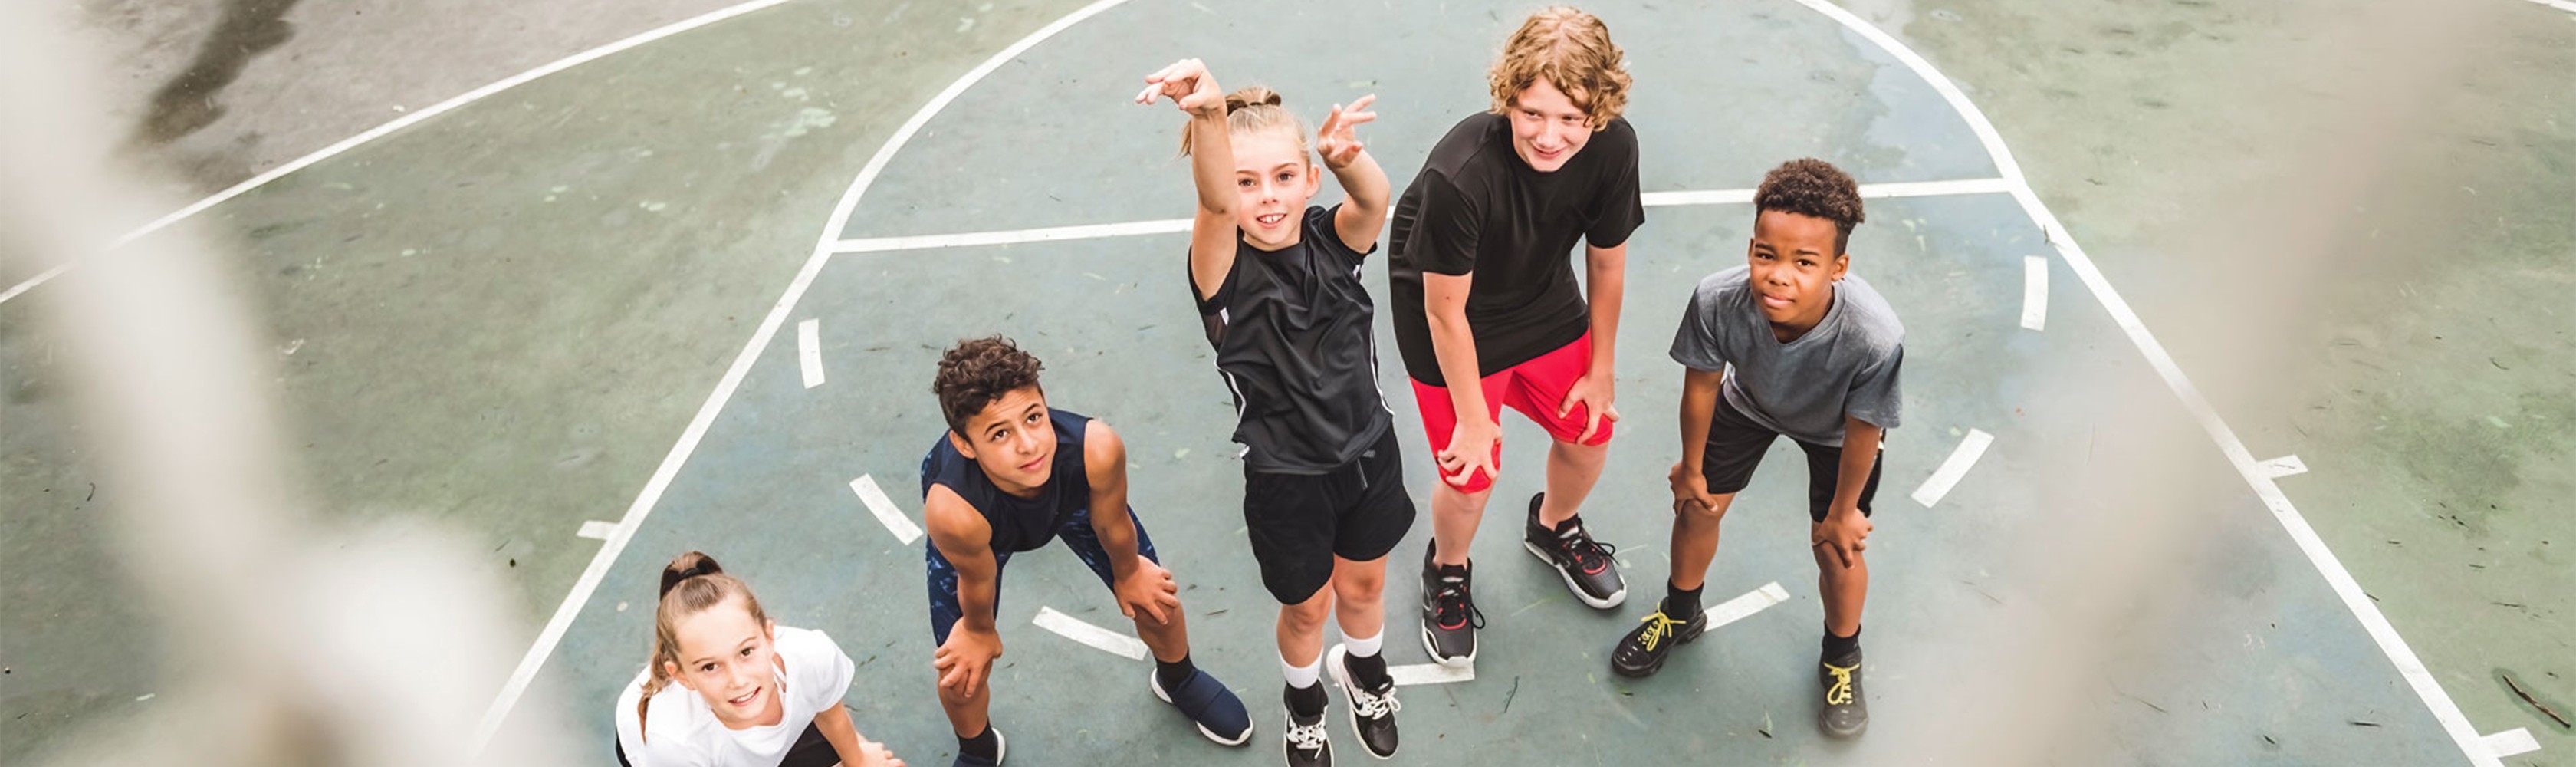 Kinder spielen auf dem Basketballplatz und träumen von einer Spitzensportkarriere.